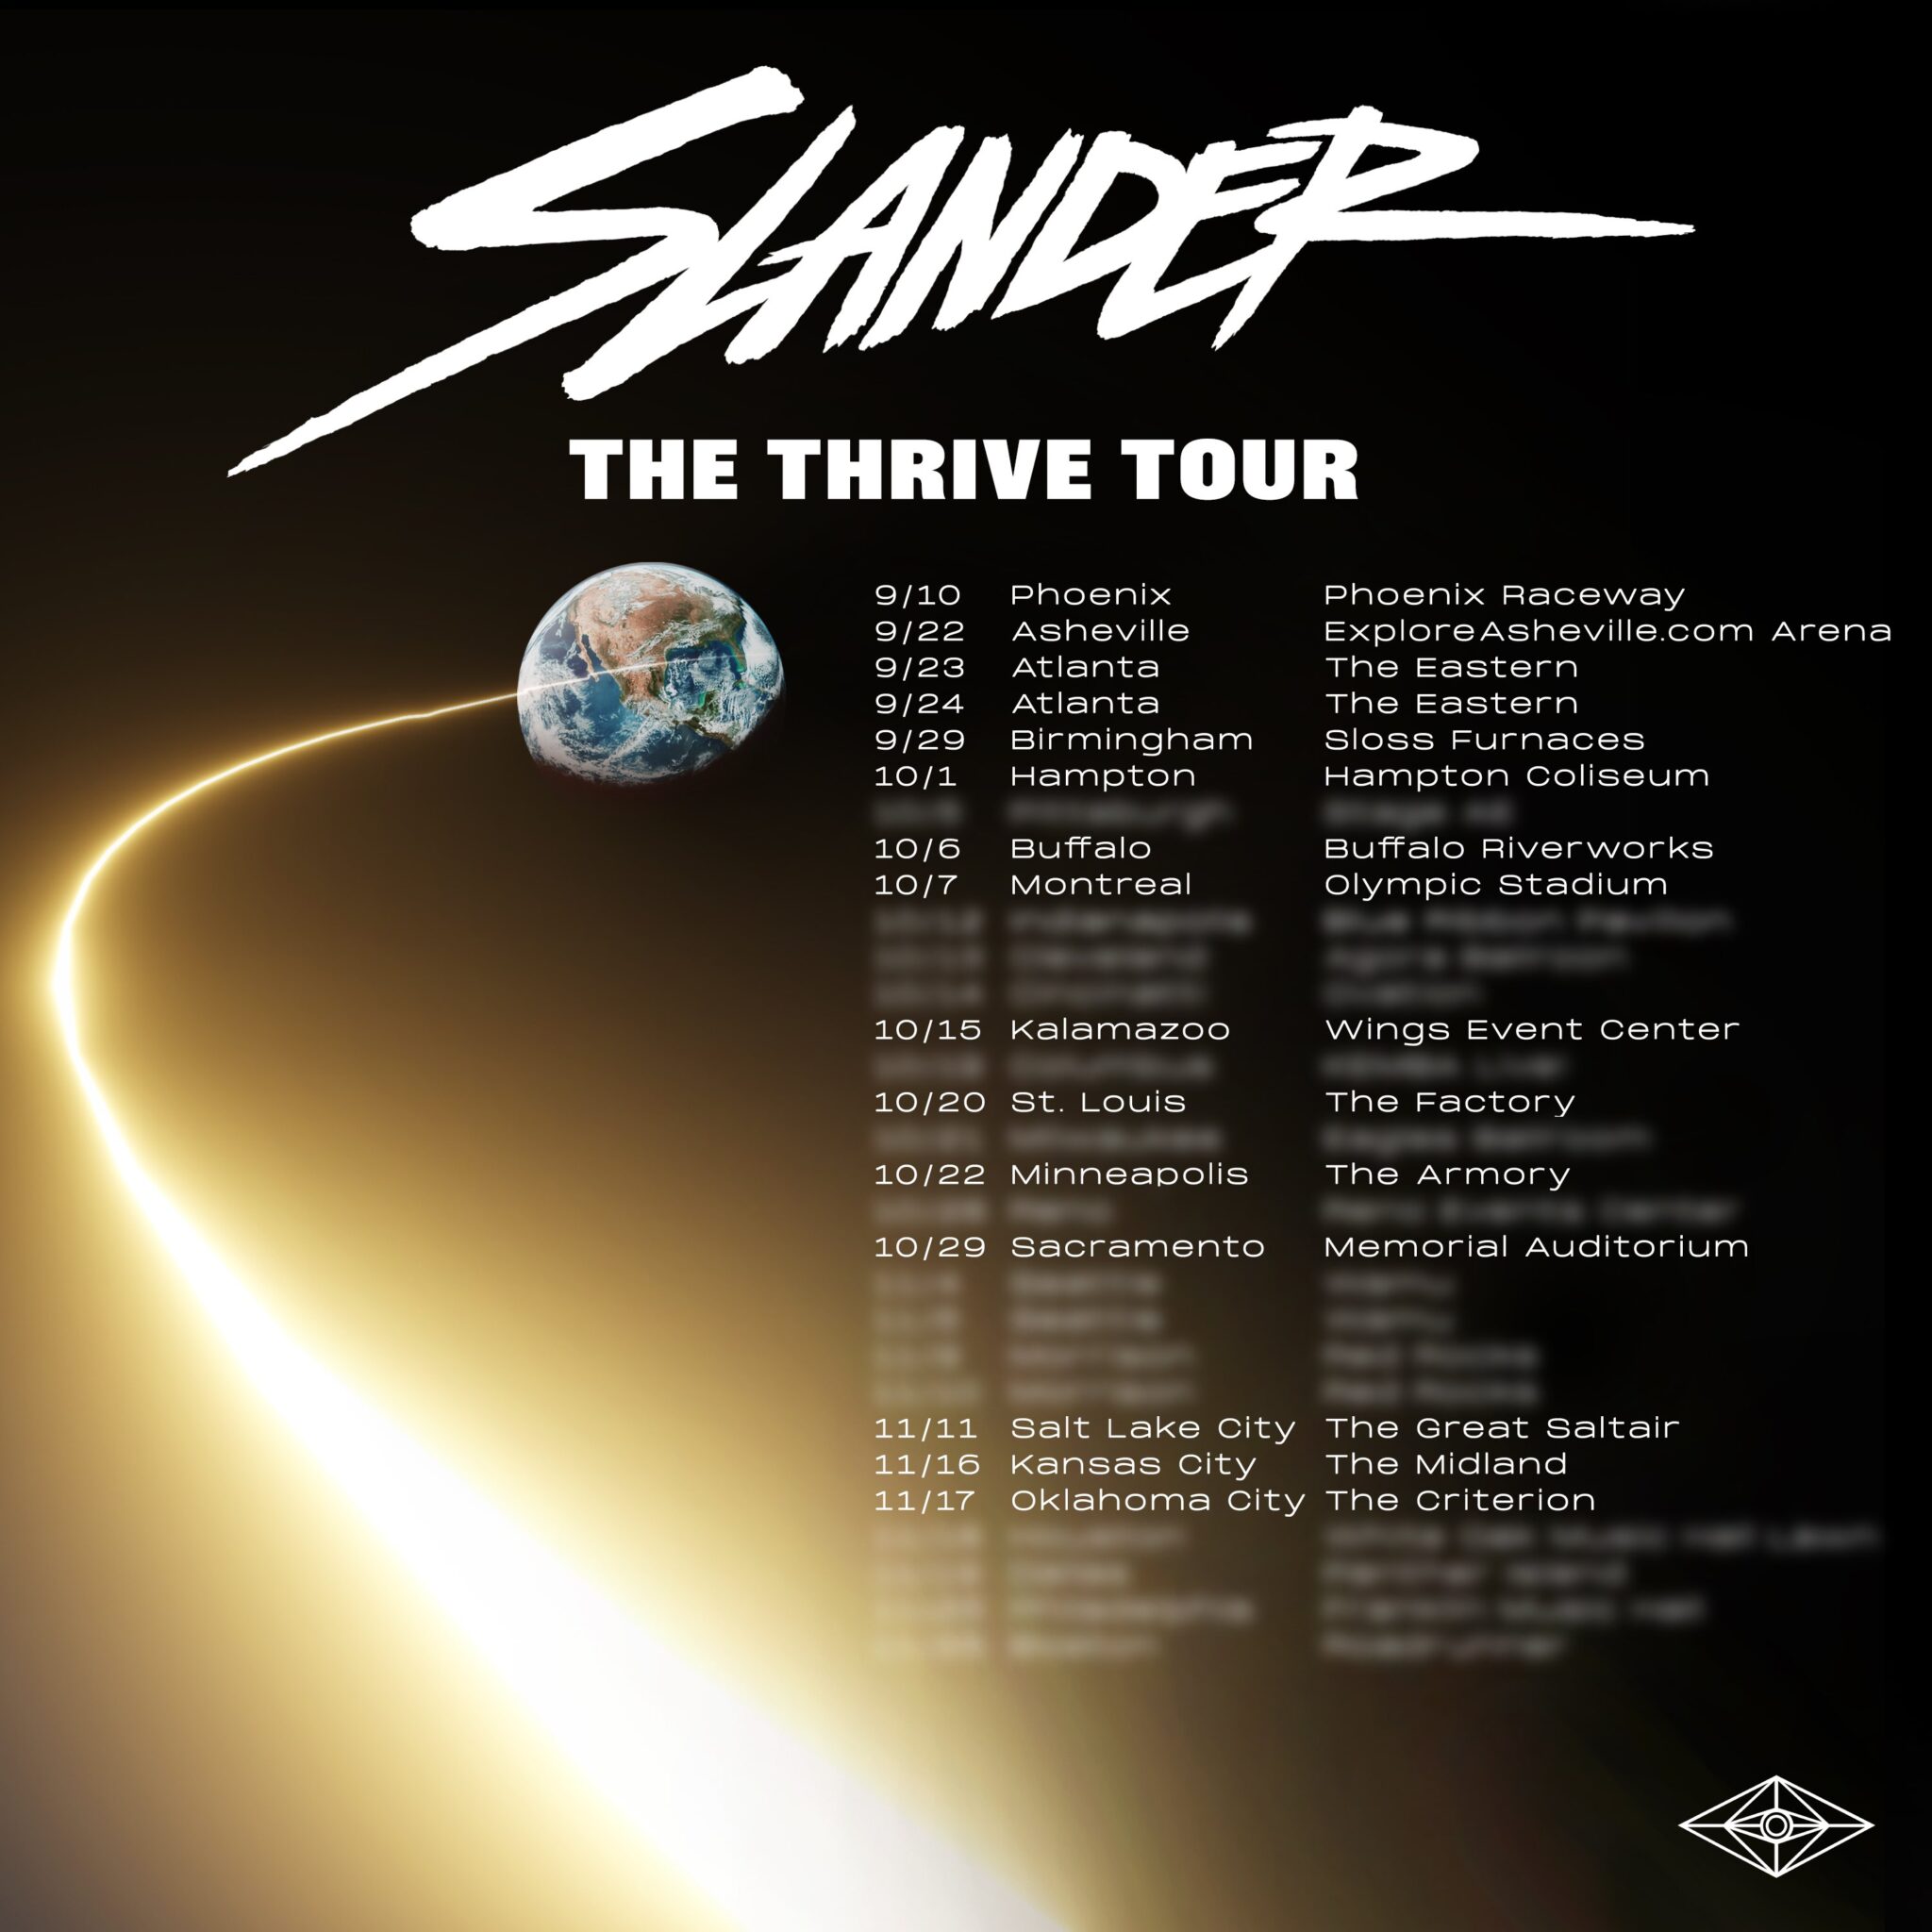 slander tour setlist